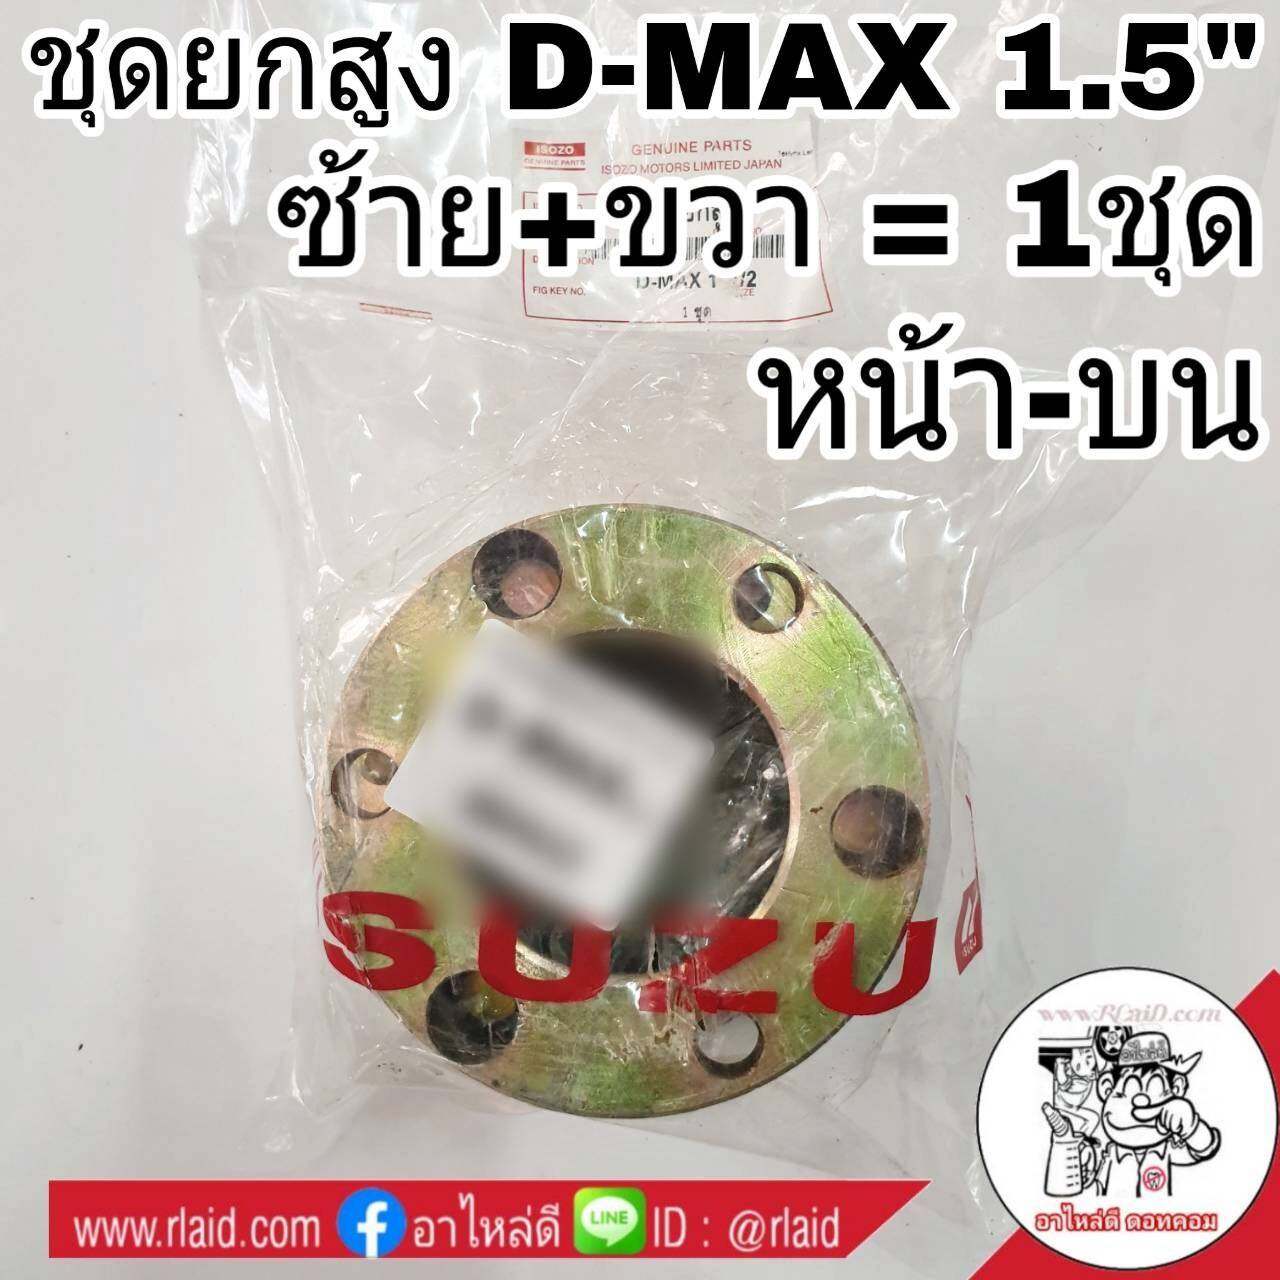 ชุดยกสูง ISUZU D-MAX ดีแม็ก 4x2 1.5นิ้ว สเปเซอร์ หน้า-บน (เหล็ก) ซ้าย+ขวา จำนวน 1ชุด